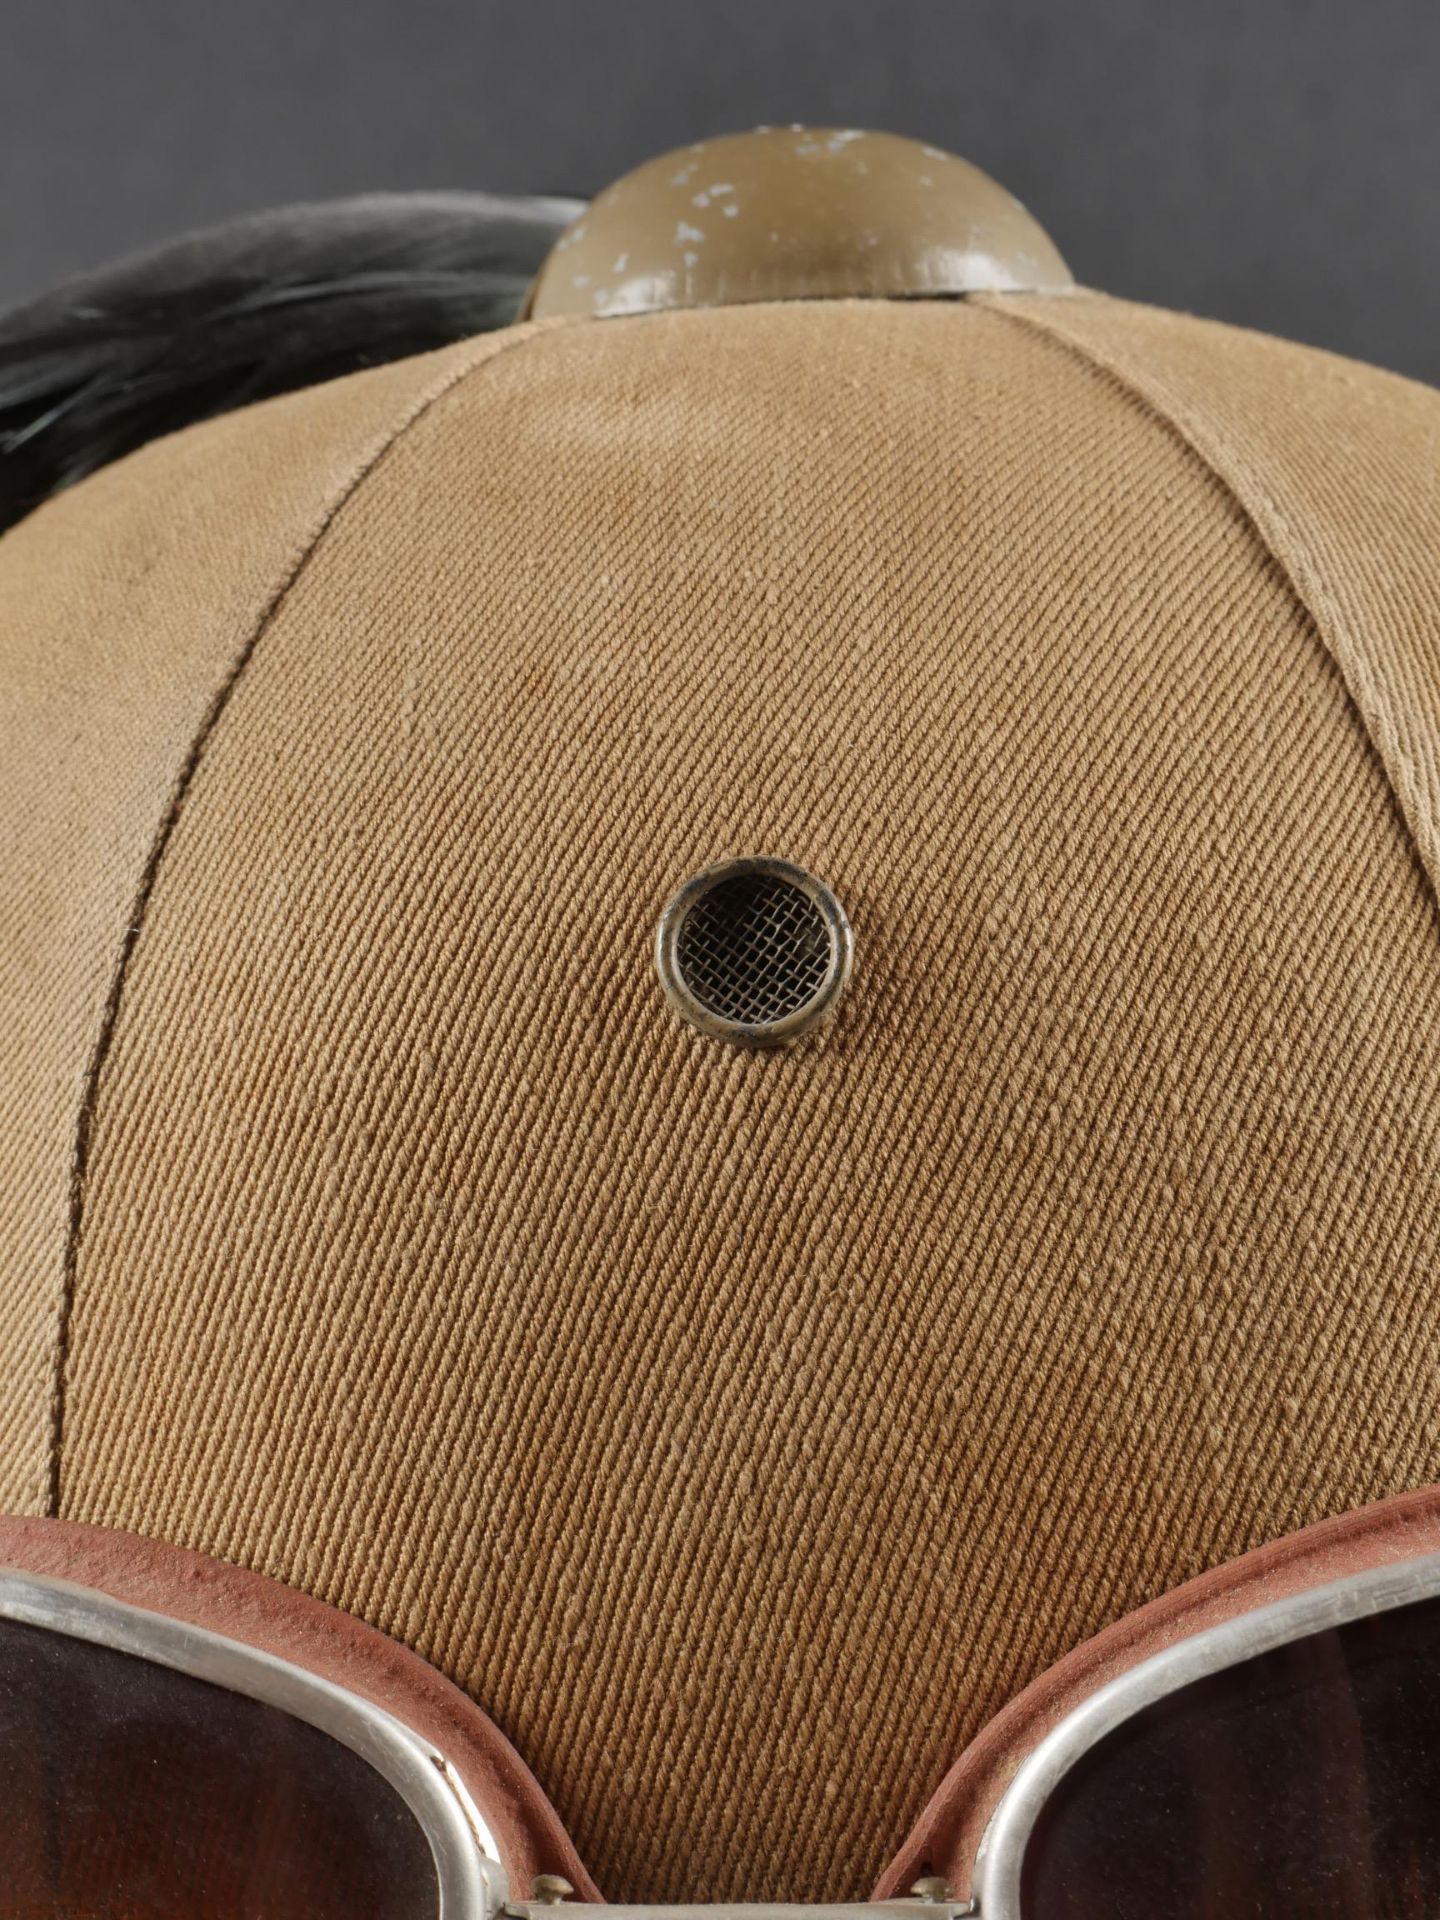 Casque tropicale du 8eme Regiment Bersaglieri. Tropical helmet of the 8th Bersaglieri Regiment. - Image 6 of 19